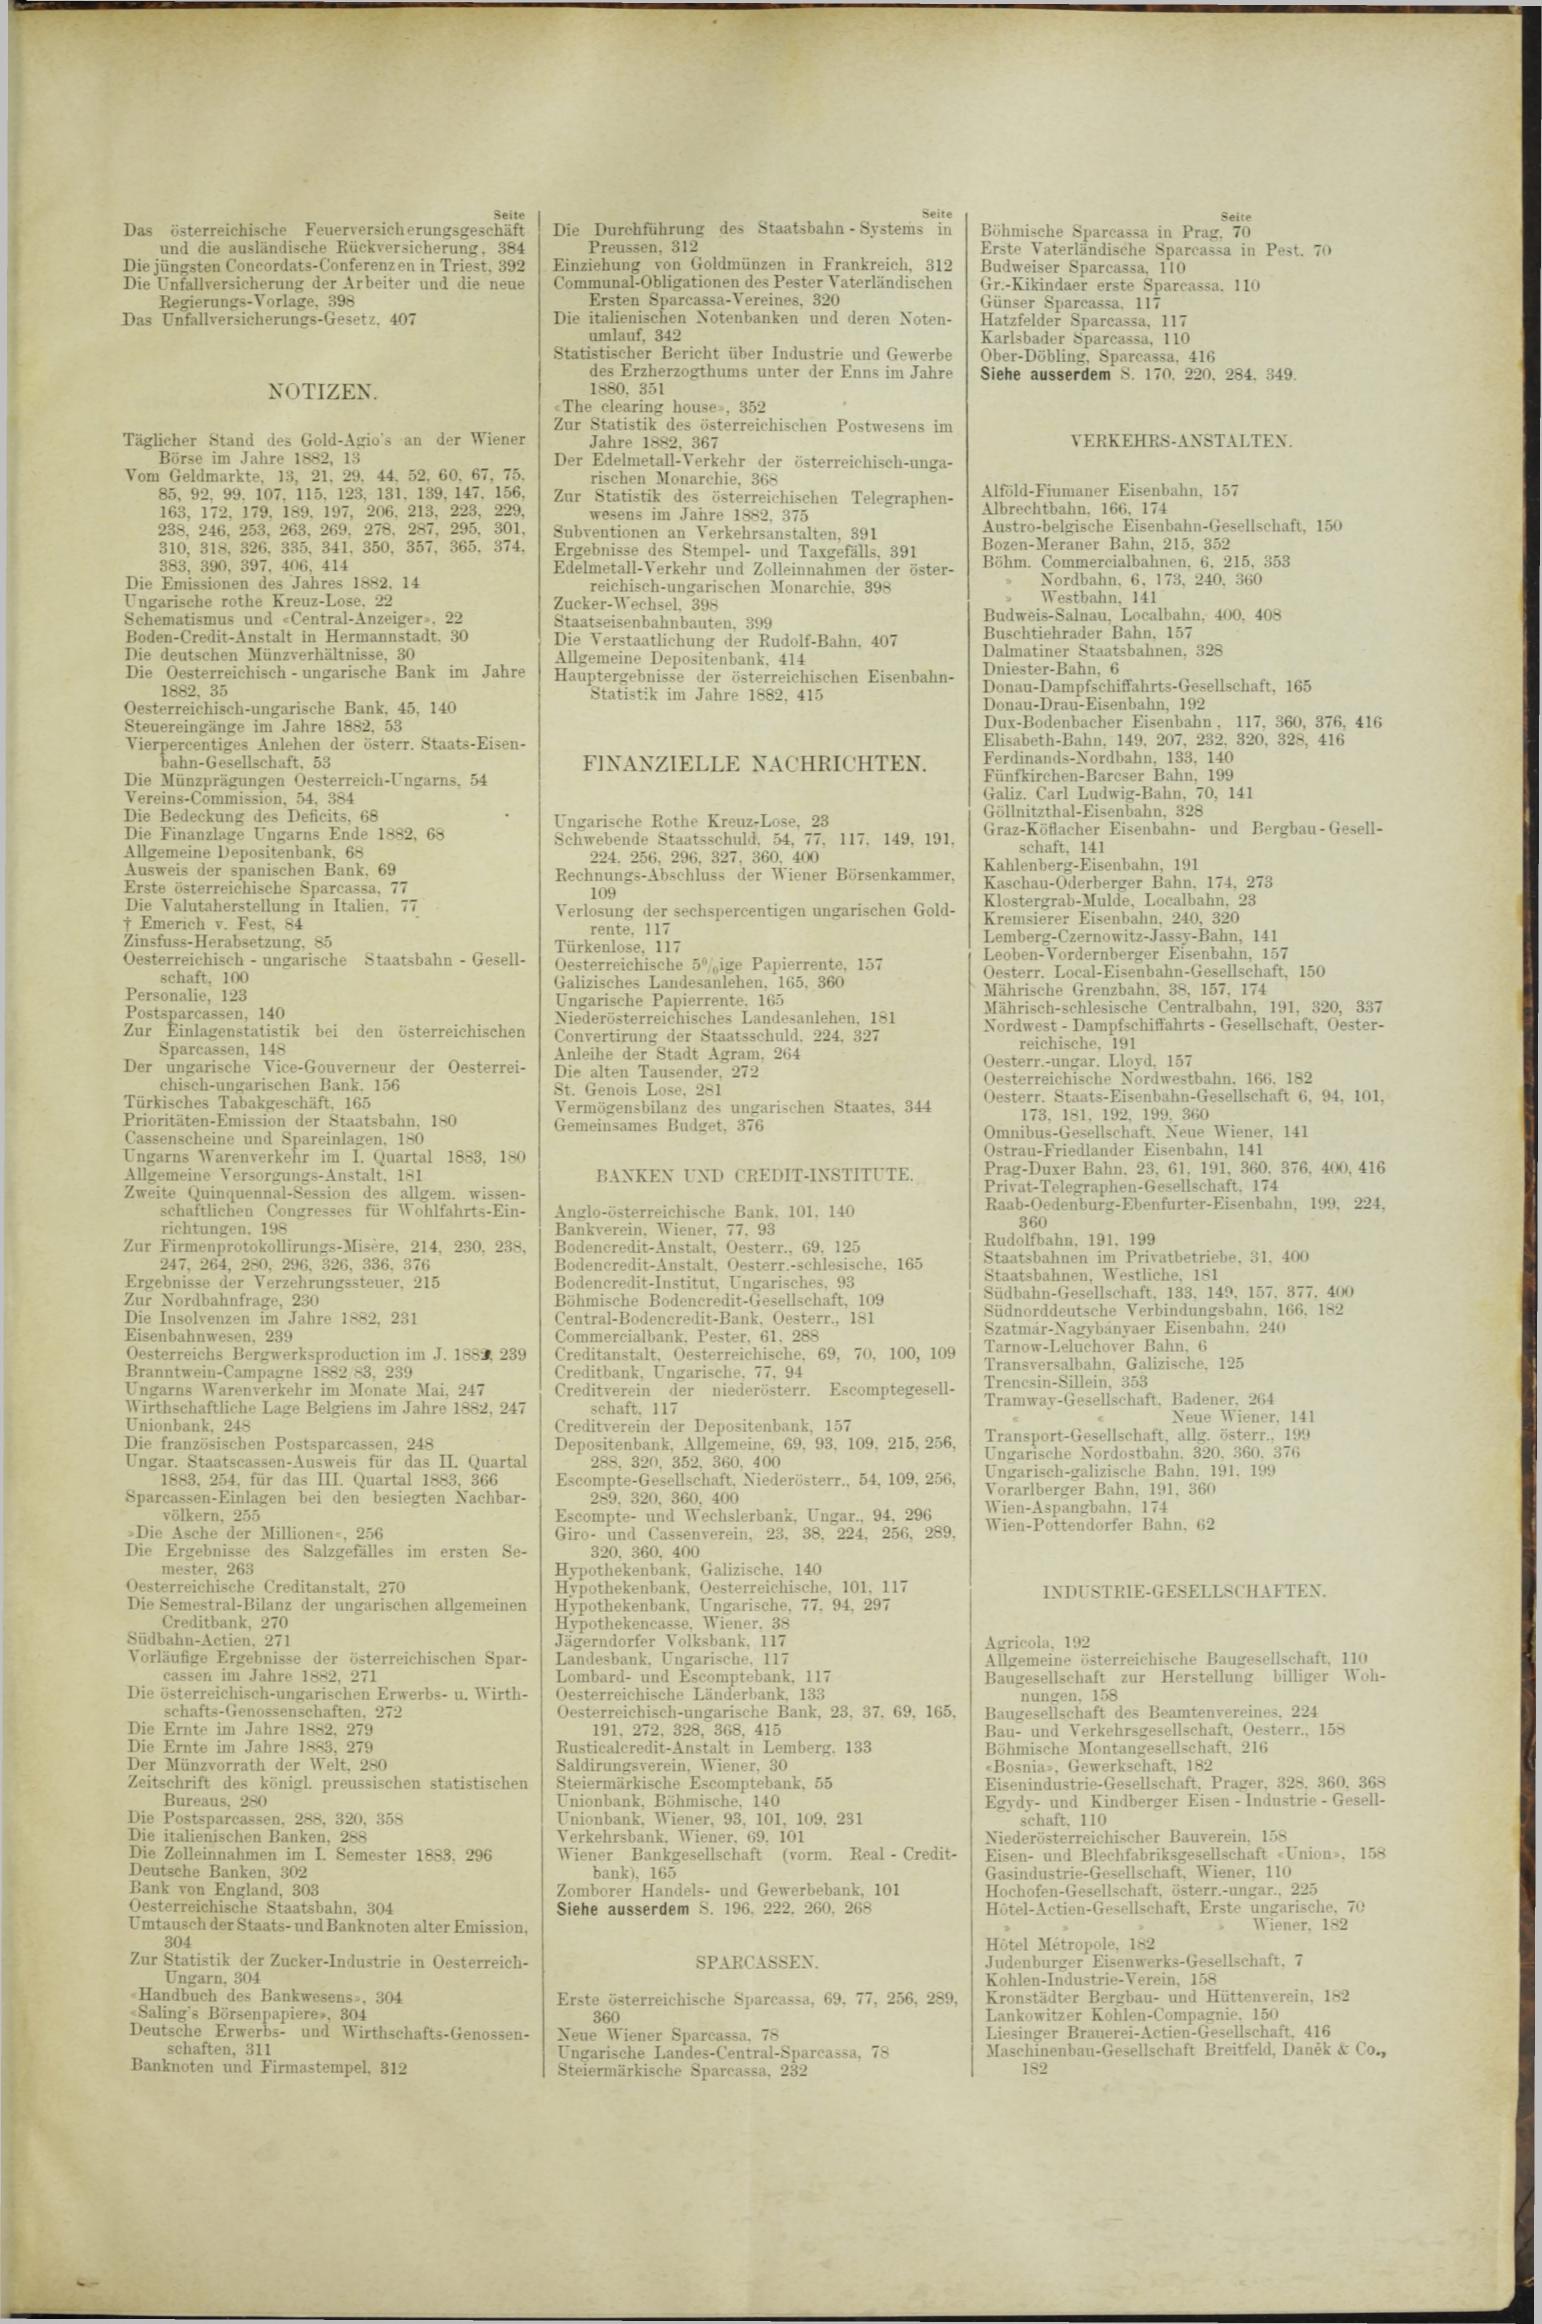 Der Tresor 25.10.1883 - Seite 11